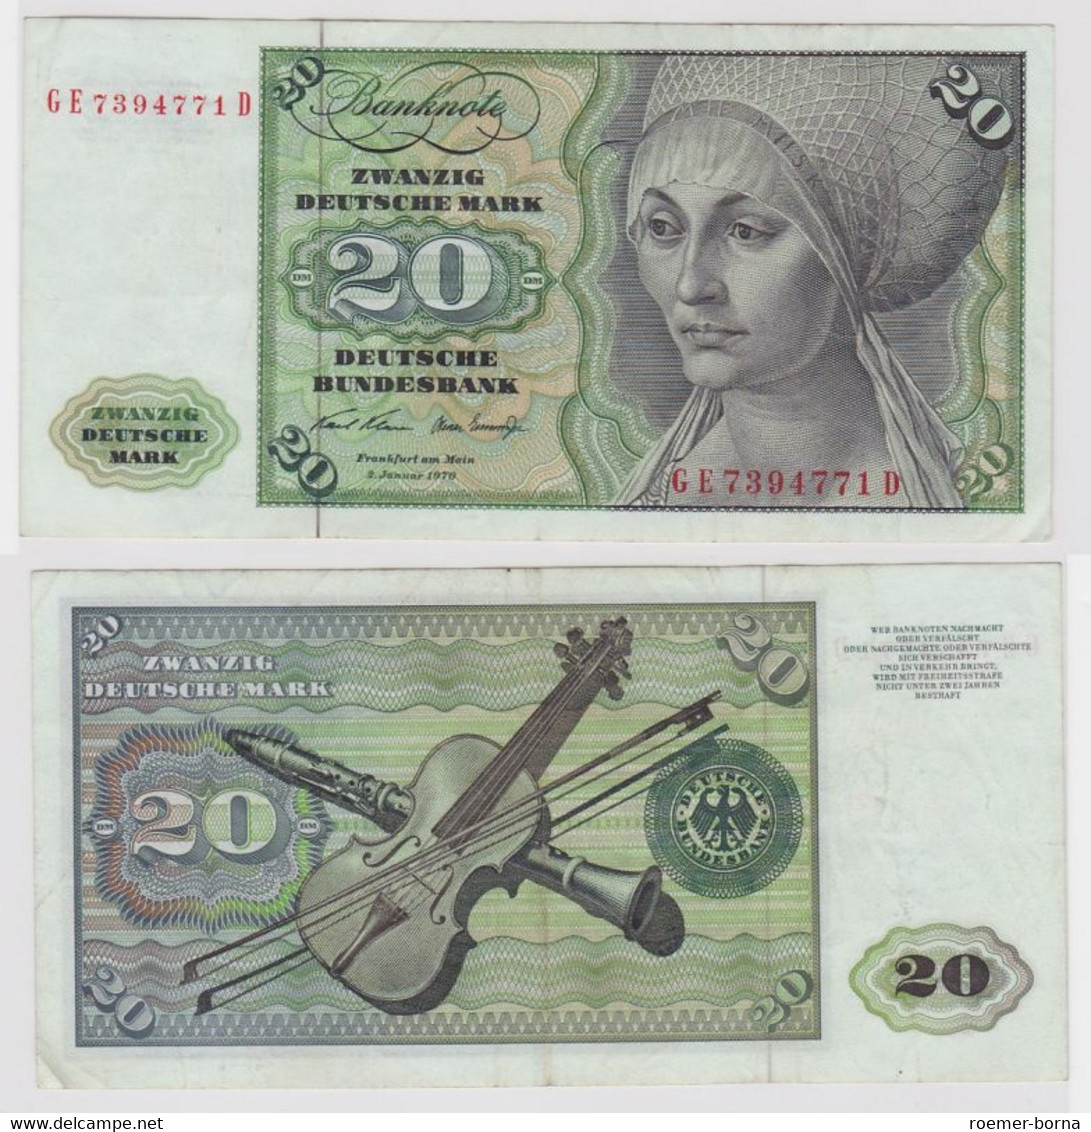 T118650 Banknote 20 DM Deutsche Mark Ro. 271b Schein 2.Jan. 1970 KN GE 7394771 D - 20 Deutsche Mark